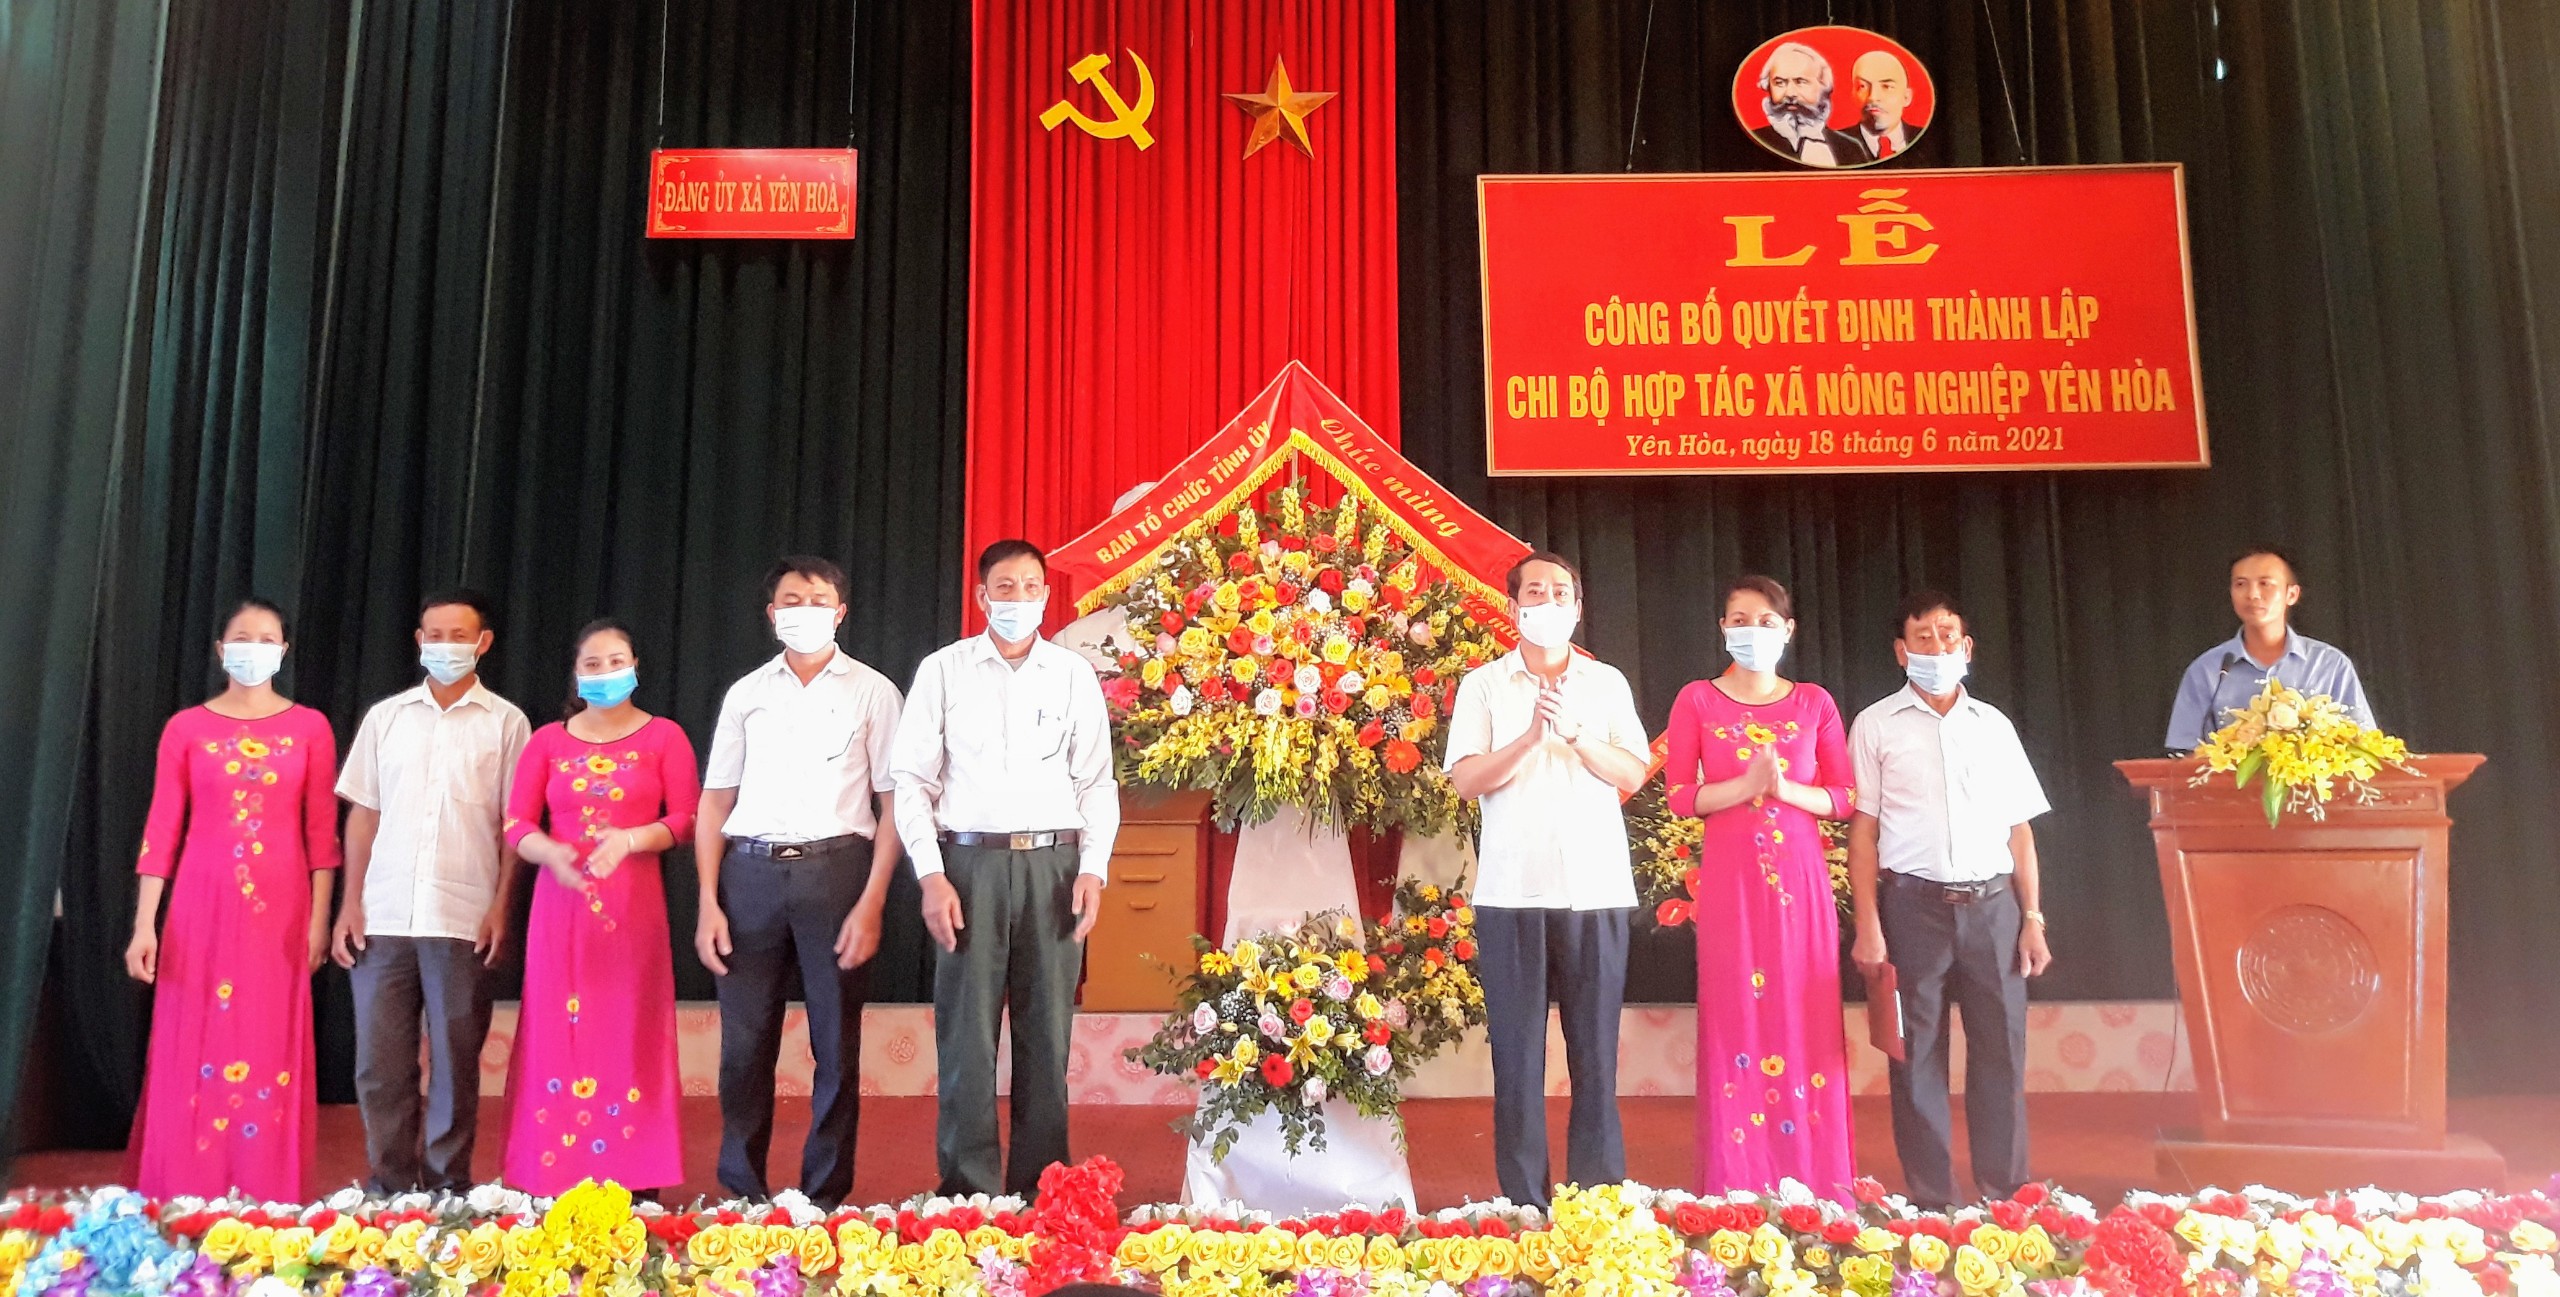 Lễ công bố quyết định thành lập Chi bộ Hợp tác xã nông nghiệp Yên Hòa